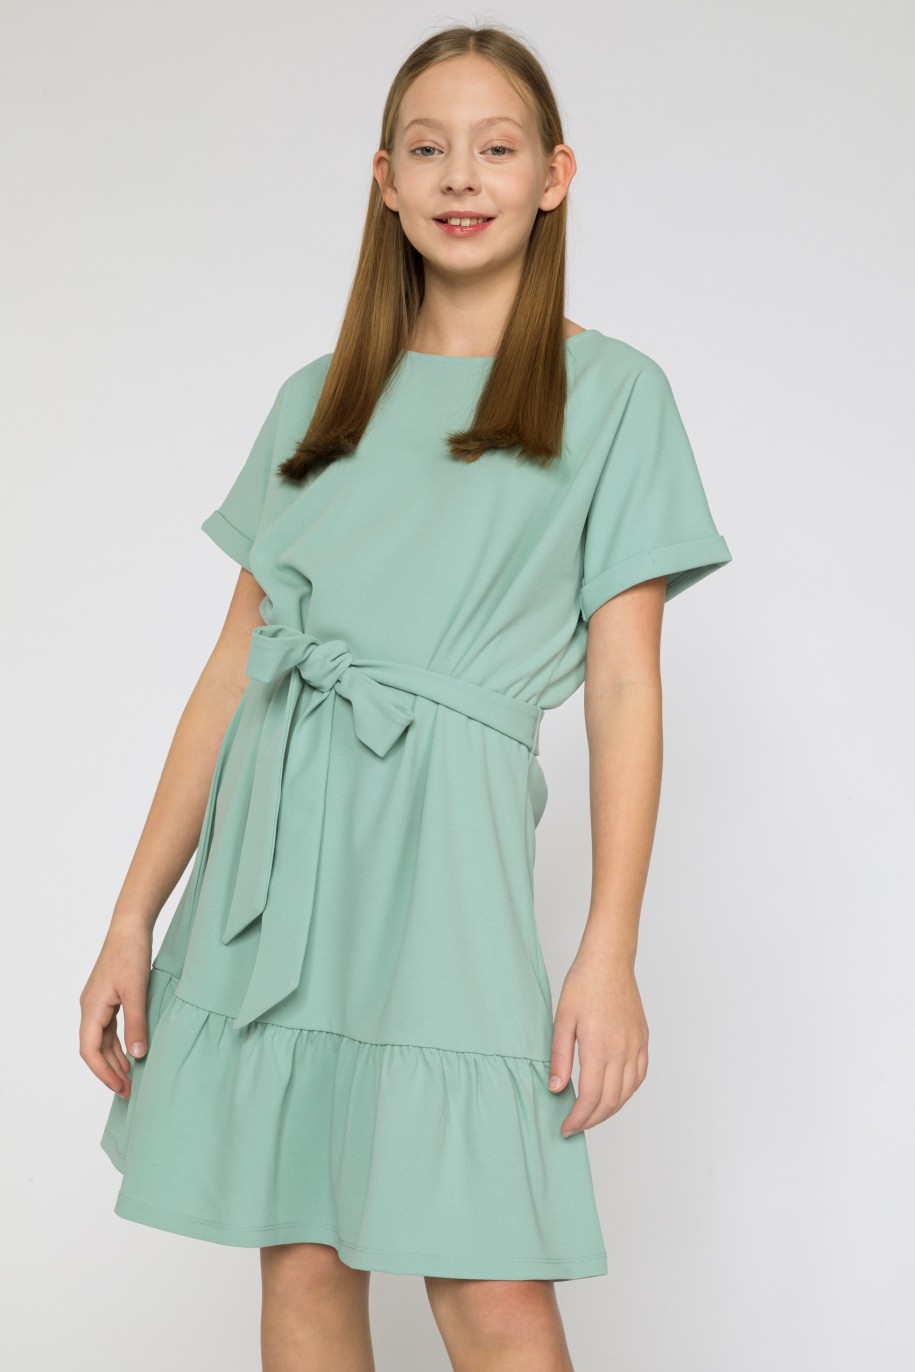 Miętowa sukienka z falbanką dla dziewczyny - 41643